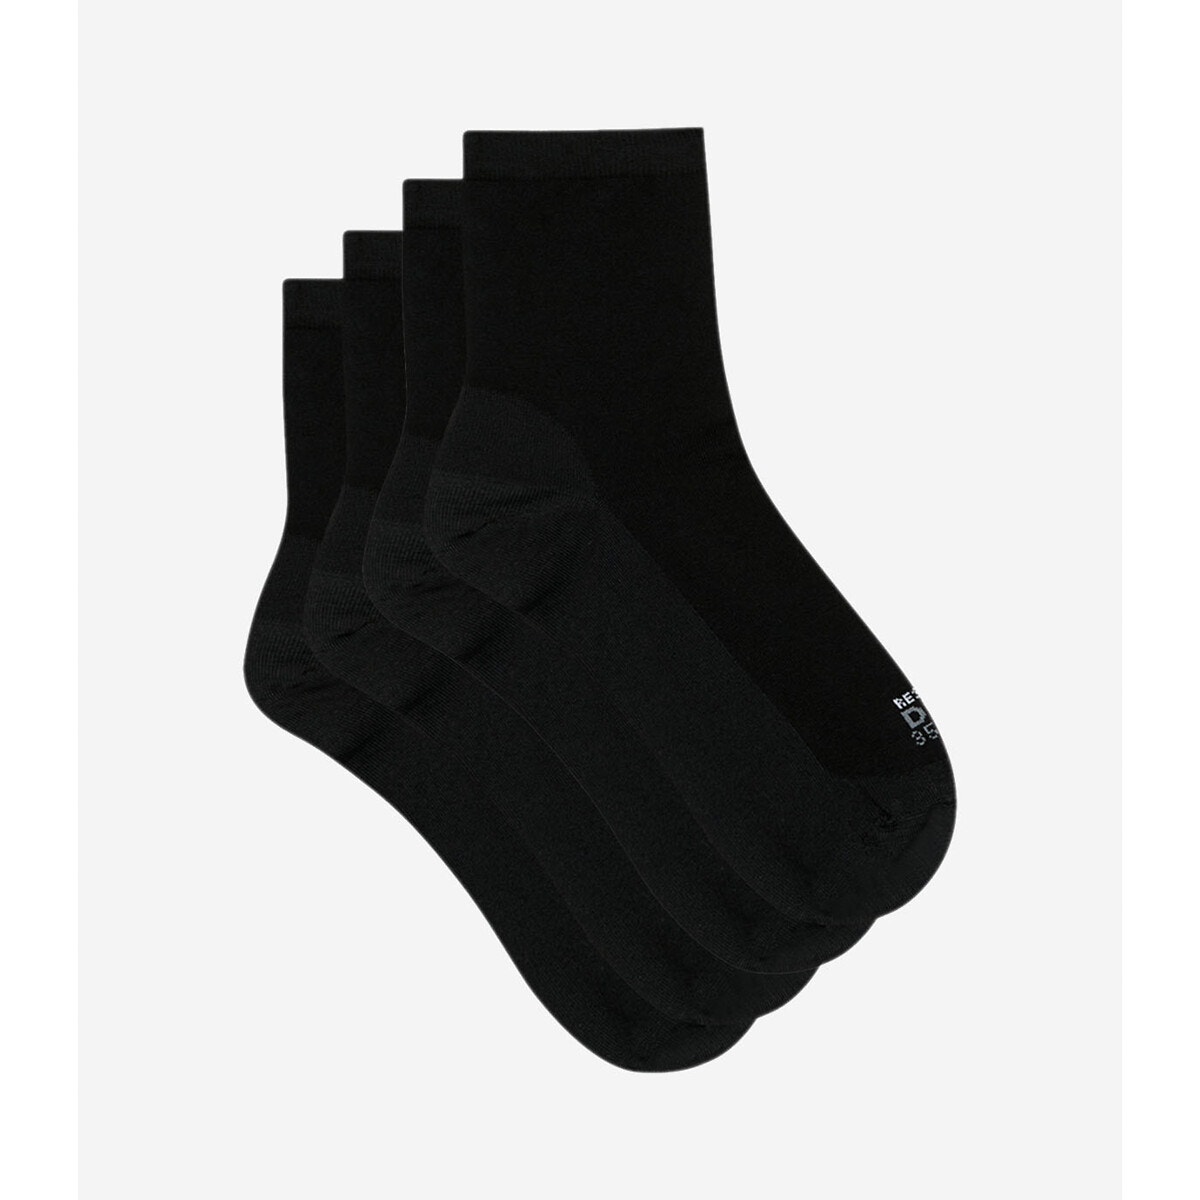 Σετ 2 ζευγάρια μίντι κάλτσες, Thermo Ultra Resist